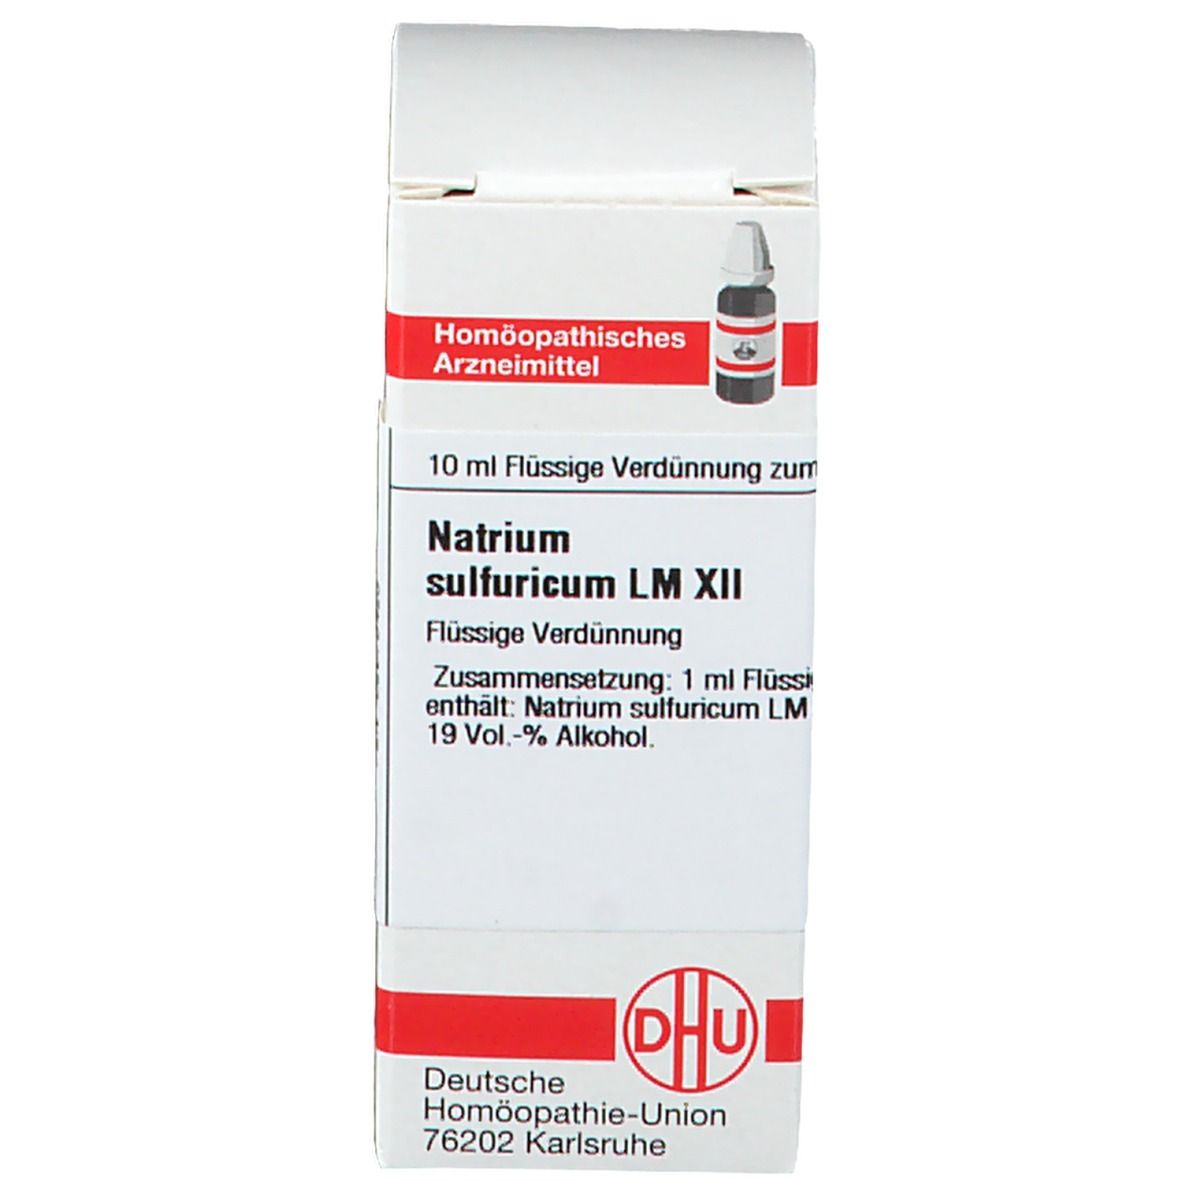 DHU Natrium Sulfuricum LM XII